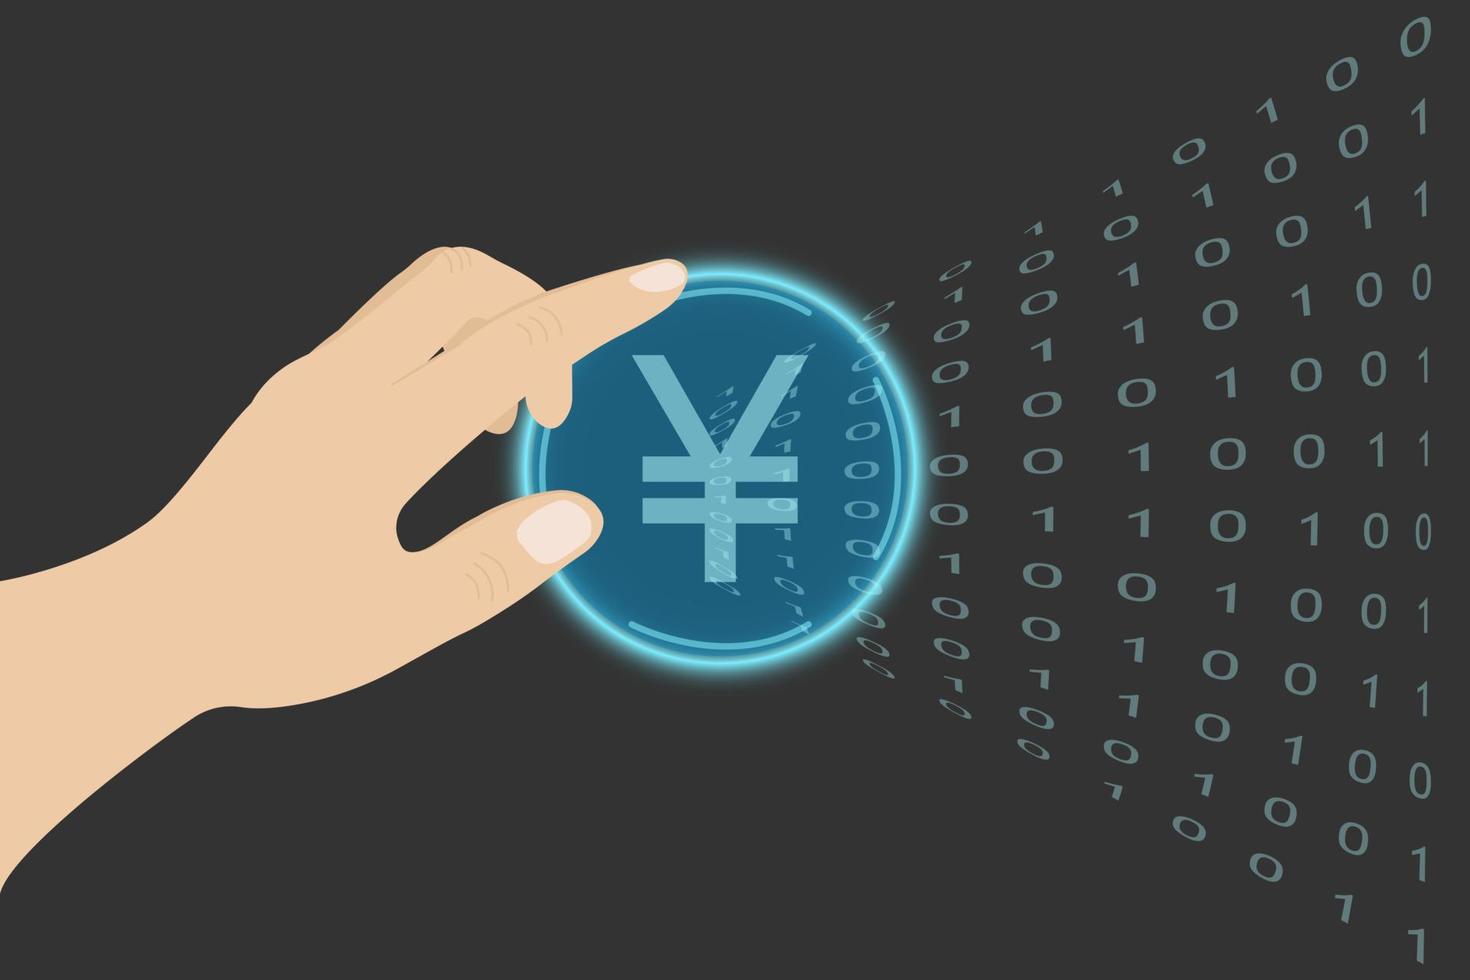 la mano presiona un botón con yuan chino virtual. botón abstracto. ilustración de vector de red tecnológica. dinero electrónico virtual, dinero de internet.